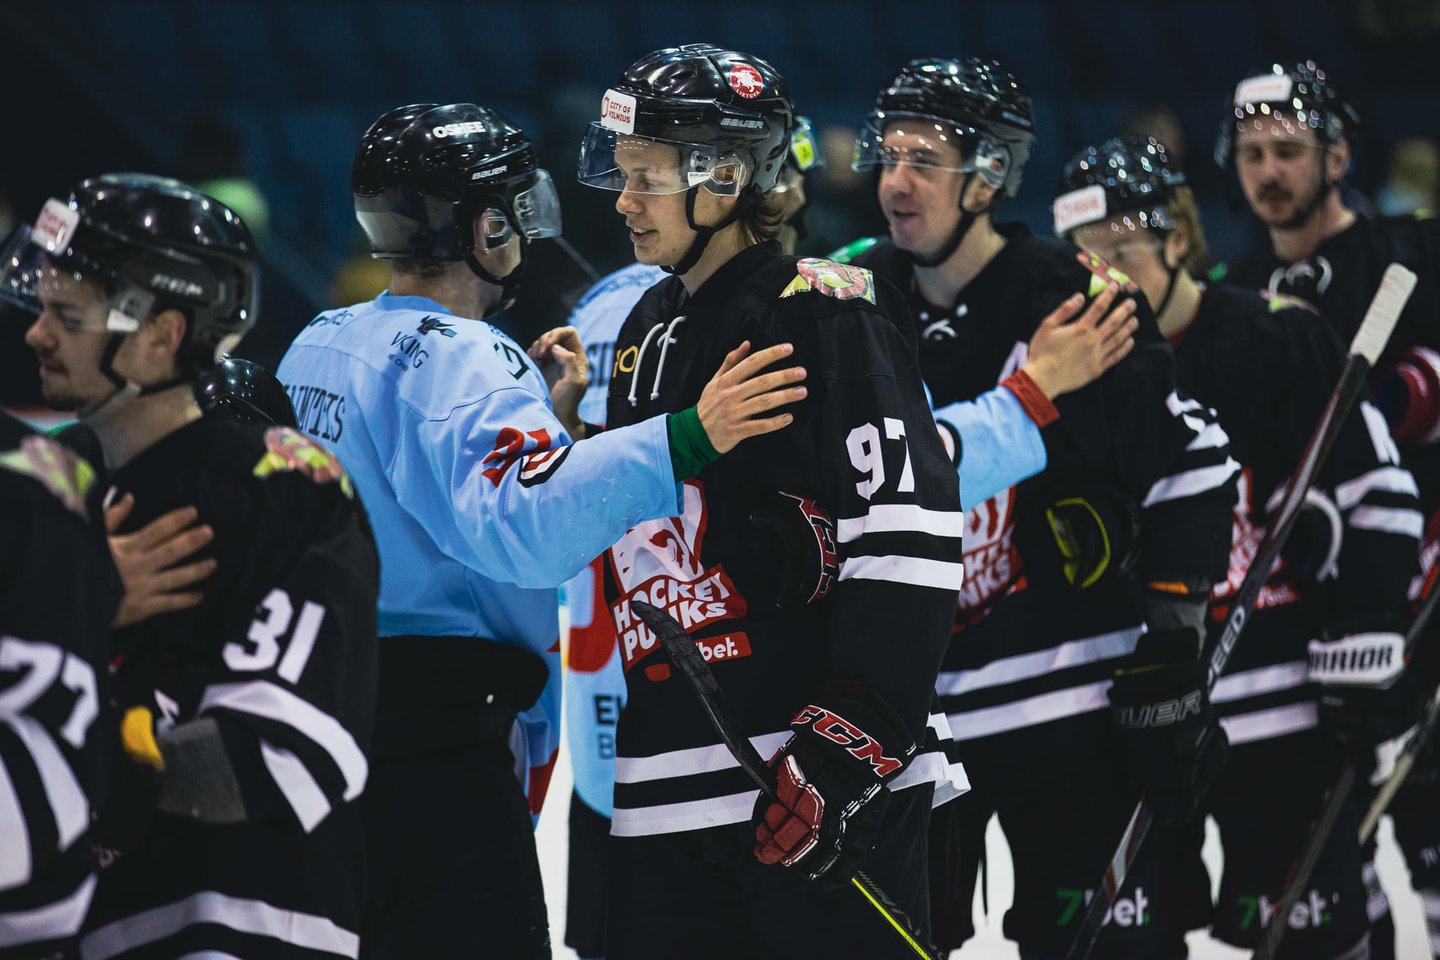  Bendrame Lietuvos ir Latvijos ledo ritulio čempionate varžysis devynios komandos<br> hockey.lt nuotr.